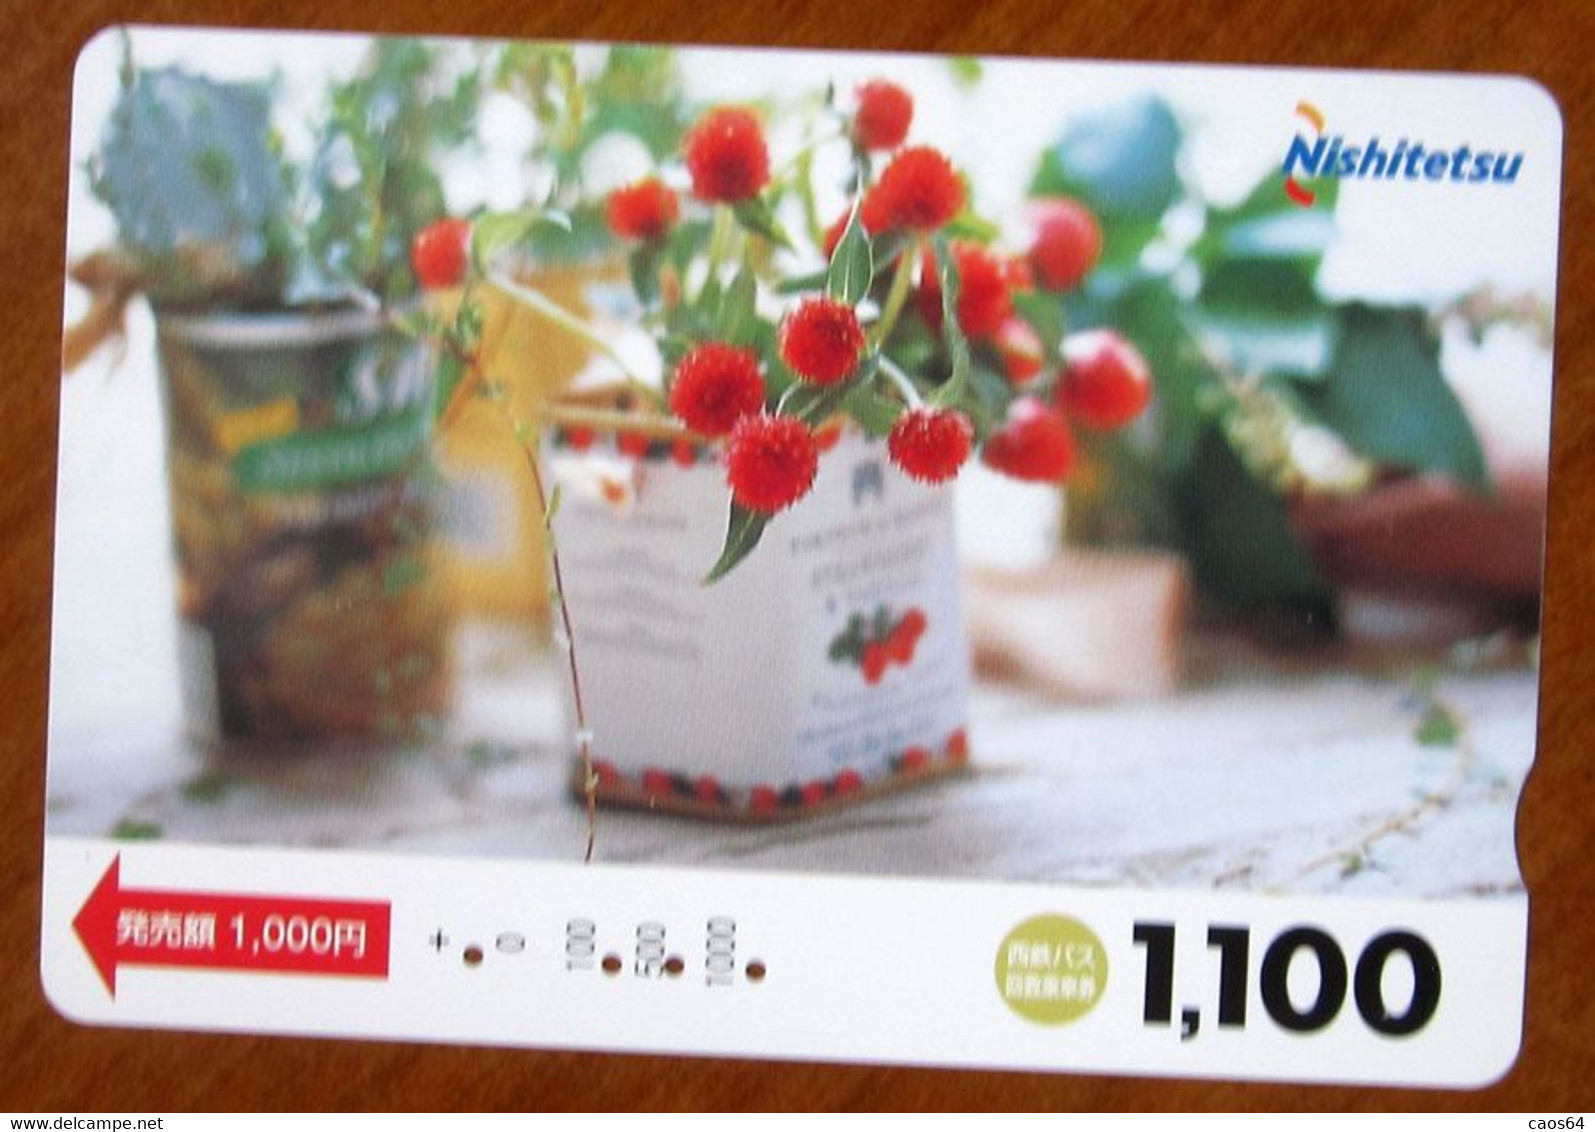 GIAPPONE Ticket Biglietto Bus MetroTreni Fiori Flower - Nishitetsu Card 1.100 ¥ - Usato - Mondo